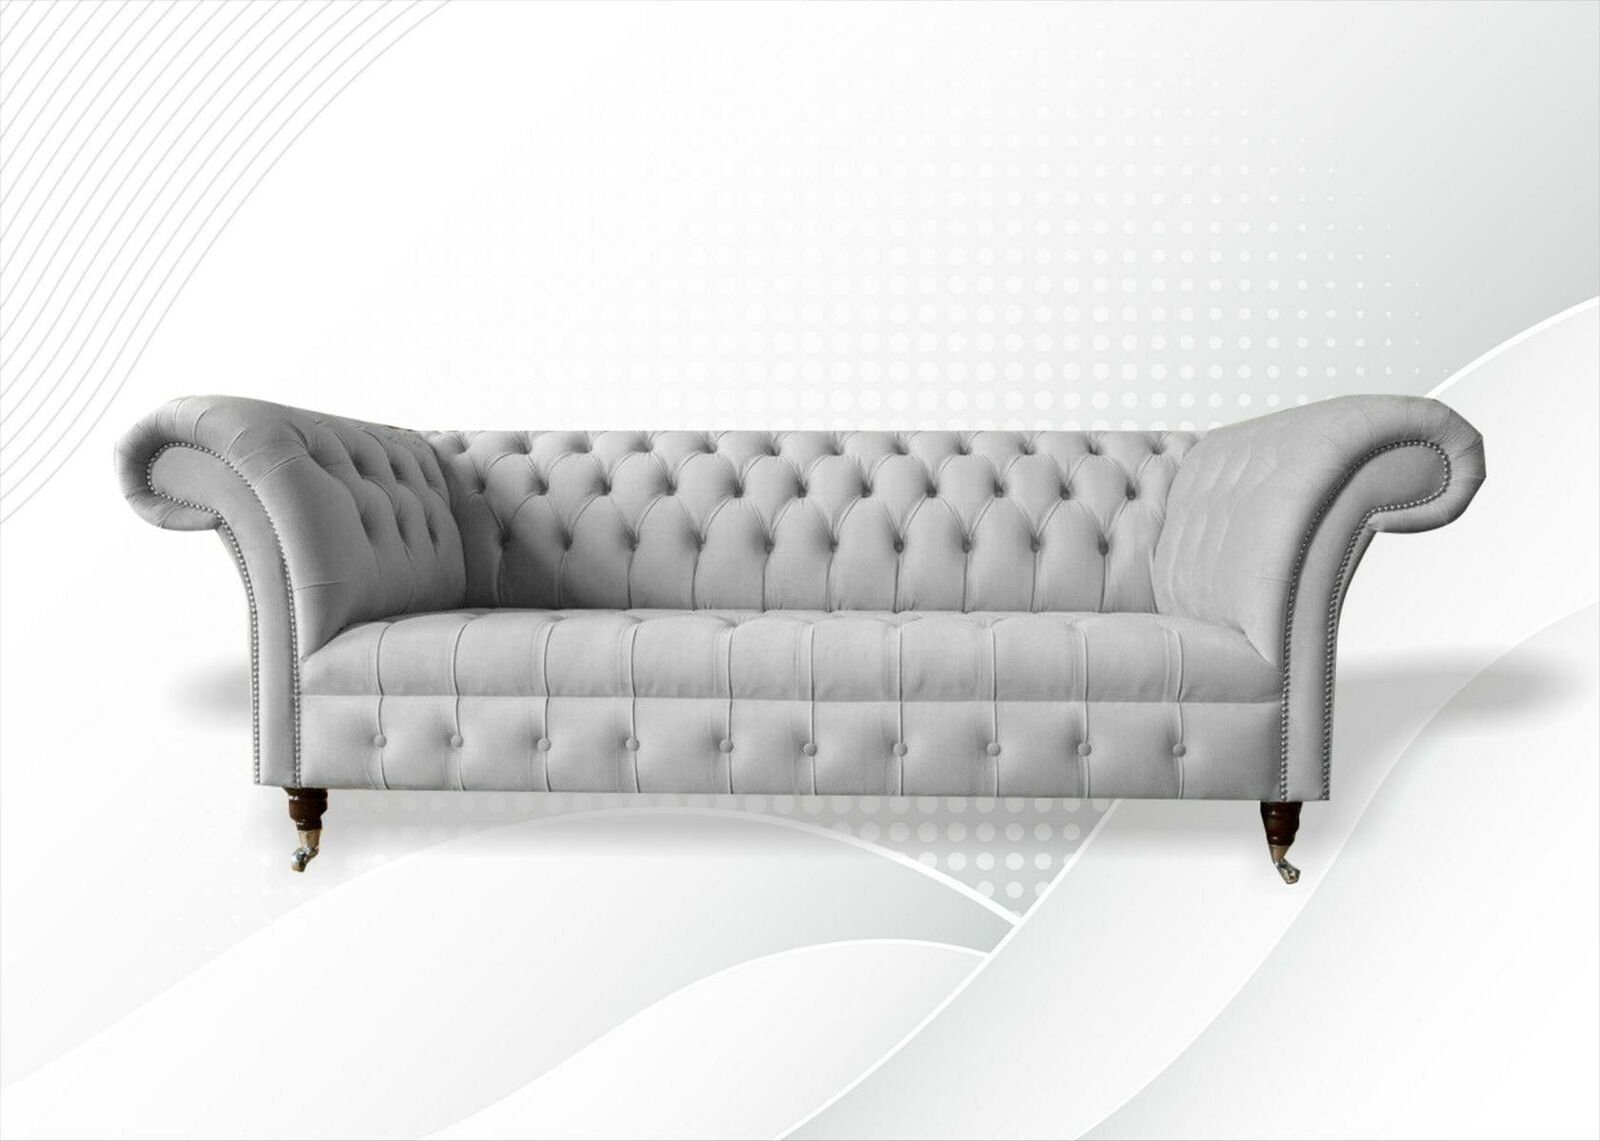 JVmoebel Chesterfield-Sofa Weißer Chesterfield Dreisitzer luxus Couch 3-er Polster Neu, Made in Europe